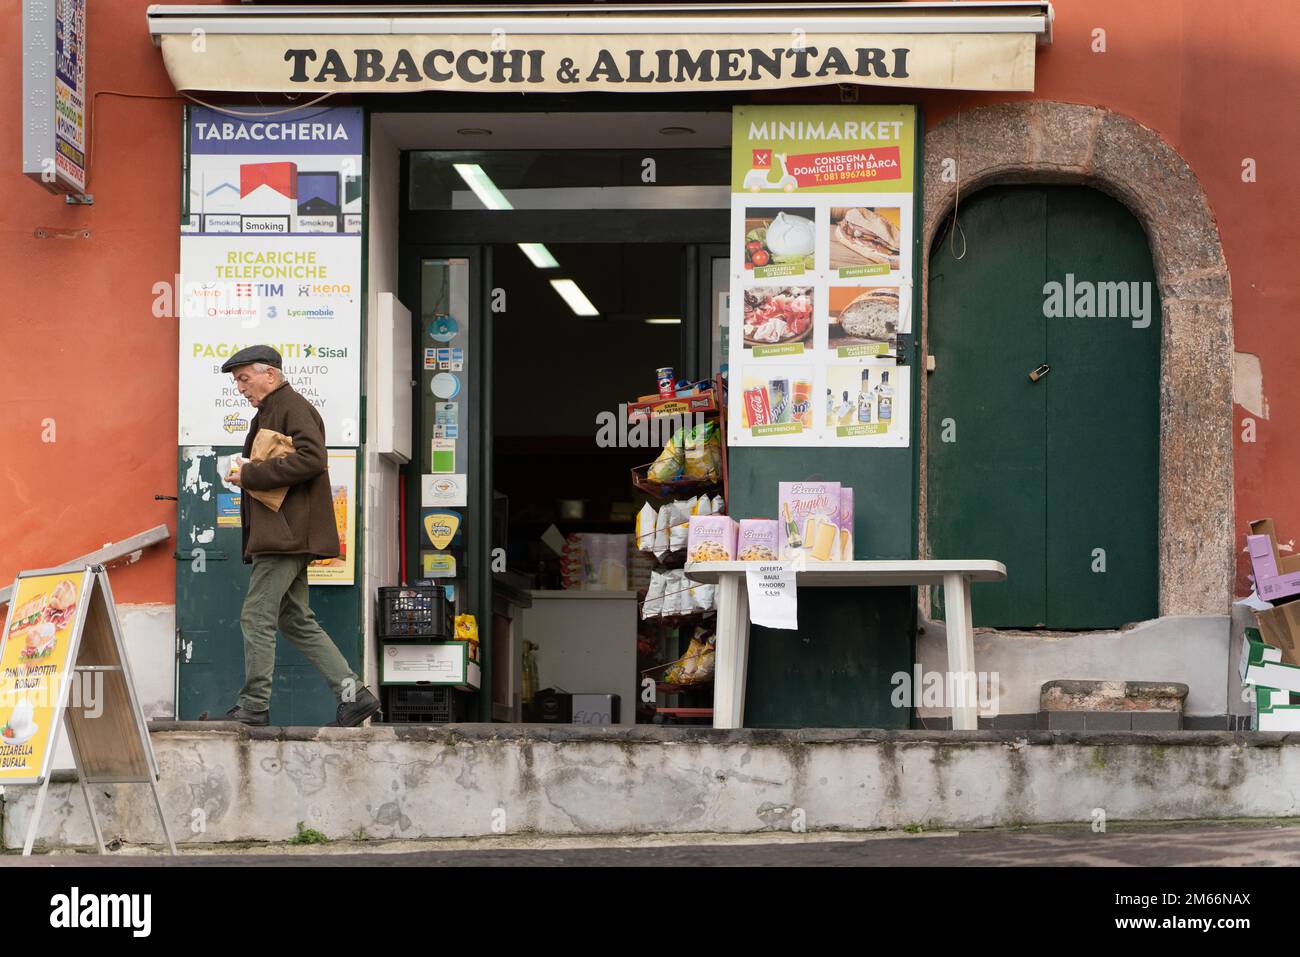 Tabacchi & Alimentari Badalucci Sonia, Piazza dei Martiri,Procida, Italy Stock Photo